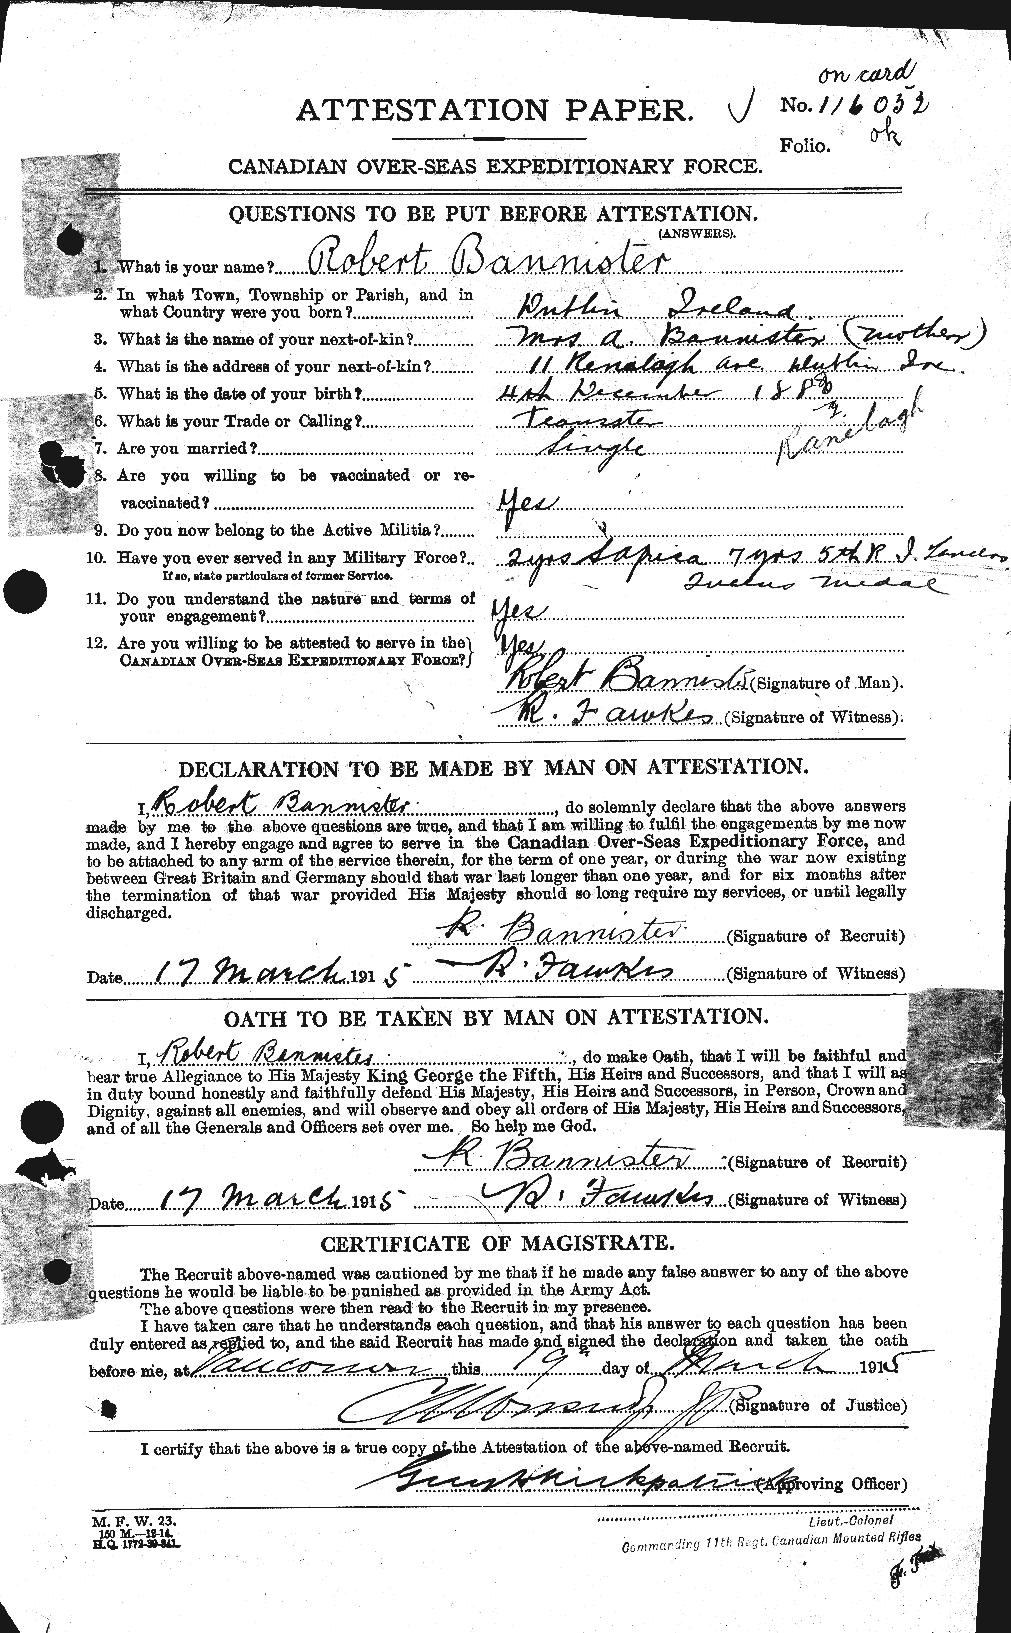 Dossiers du Personnel de la Première Guerre mondiale - CEC 224770a